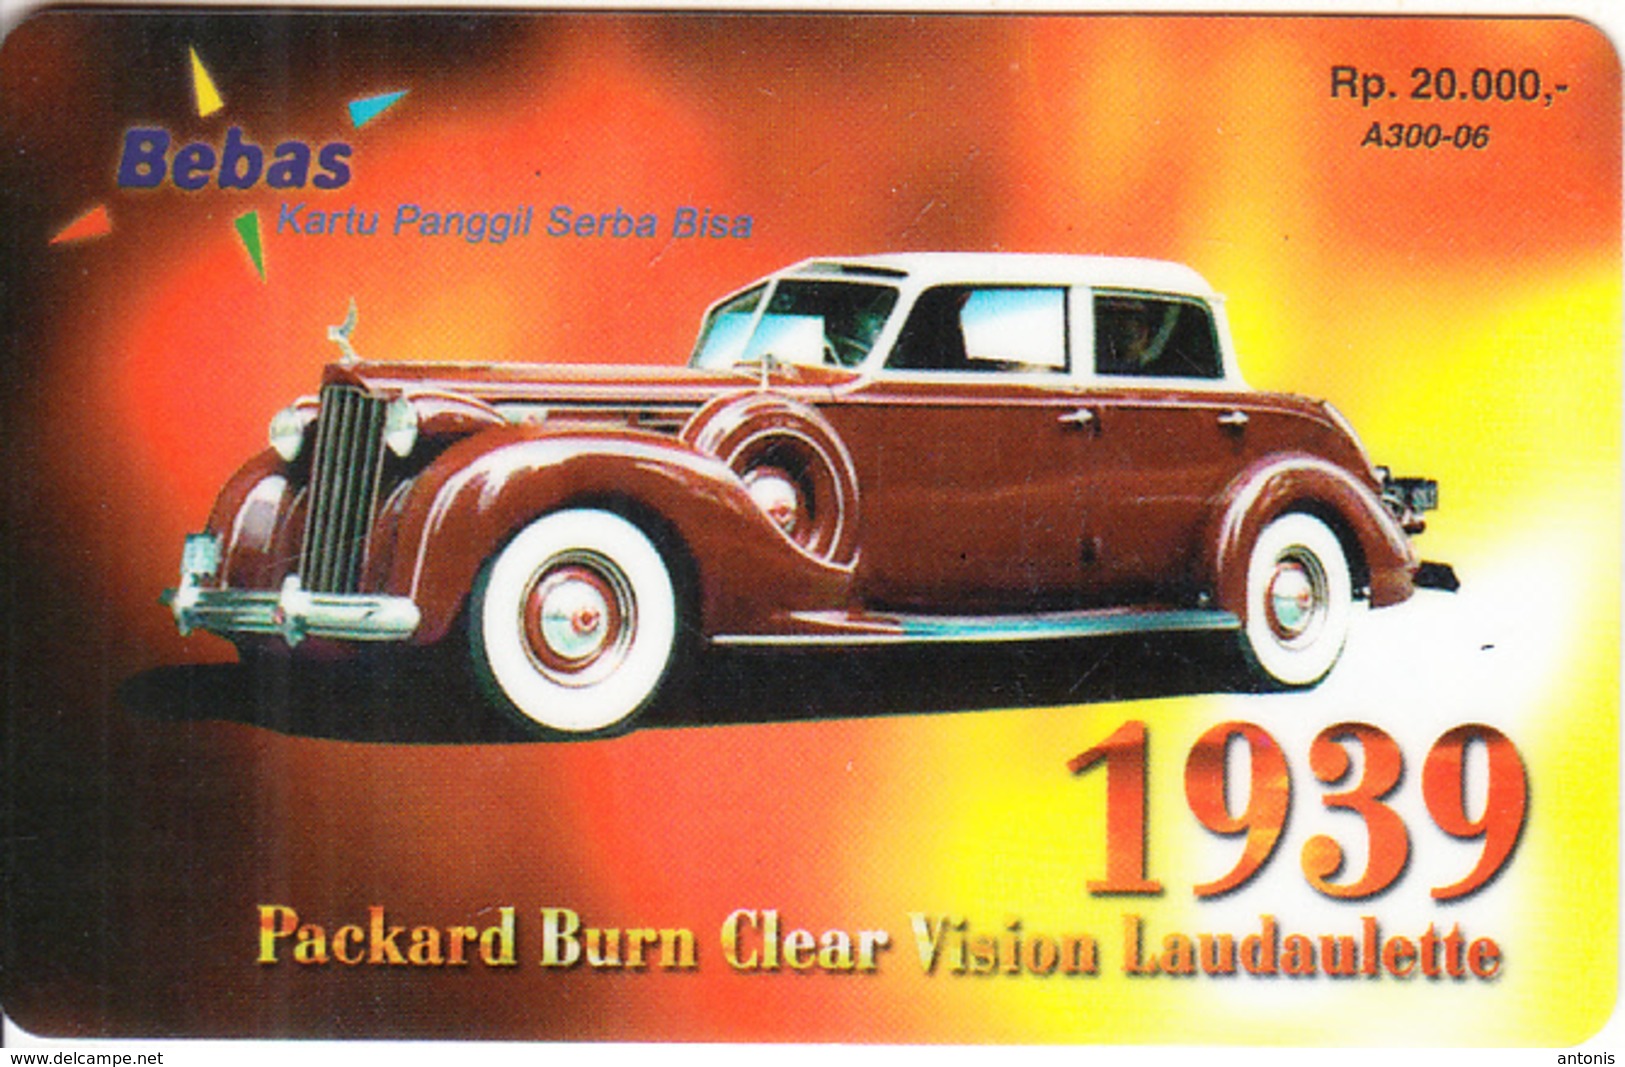 INDONESIA - Rolls Royce Laudaulette 1939, Bebas Prepaid Card Rp.20000, Exp.date 01/04/05, Used - Indonesia